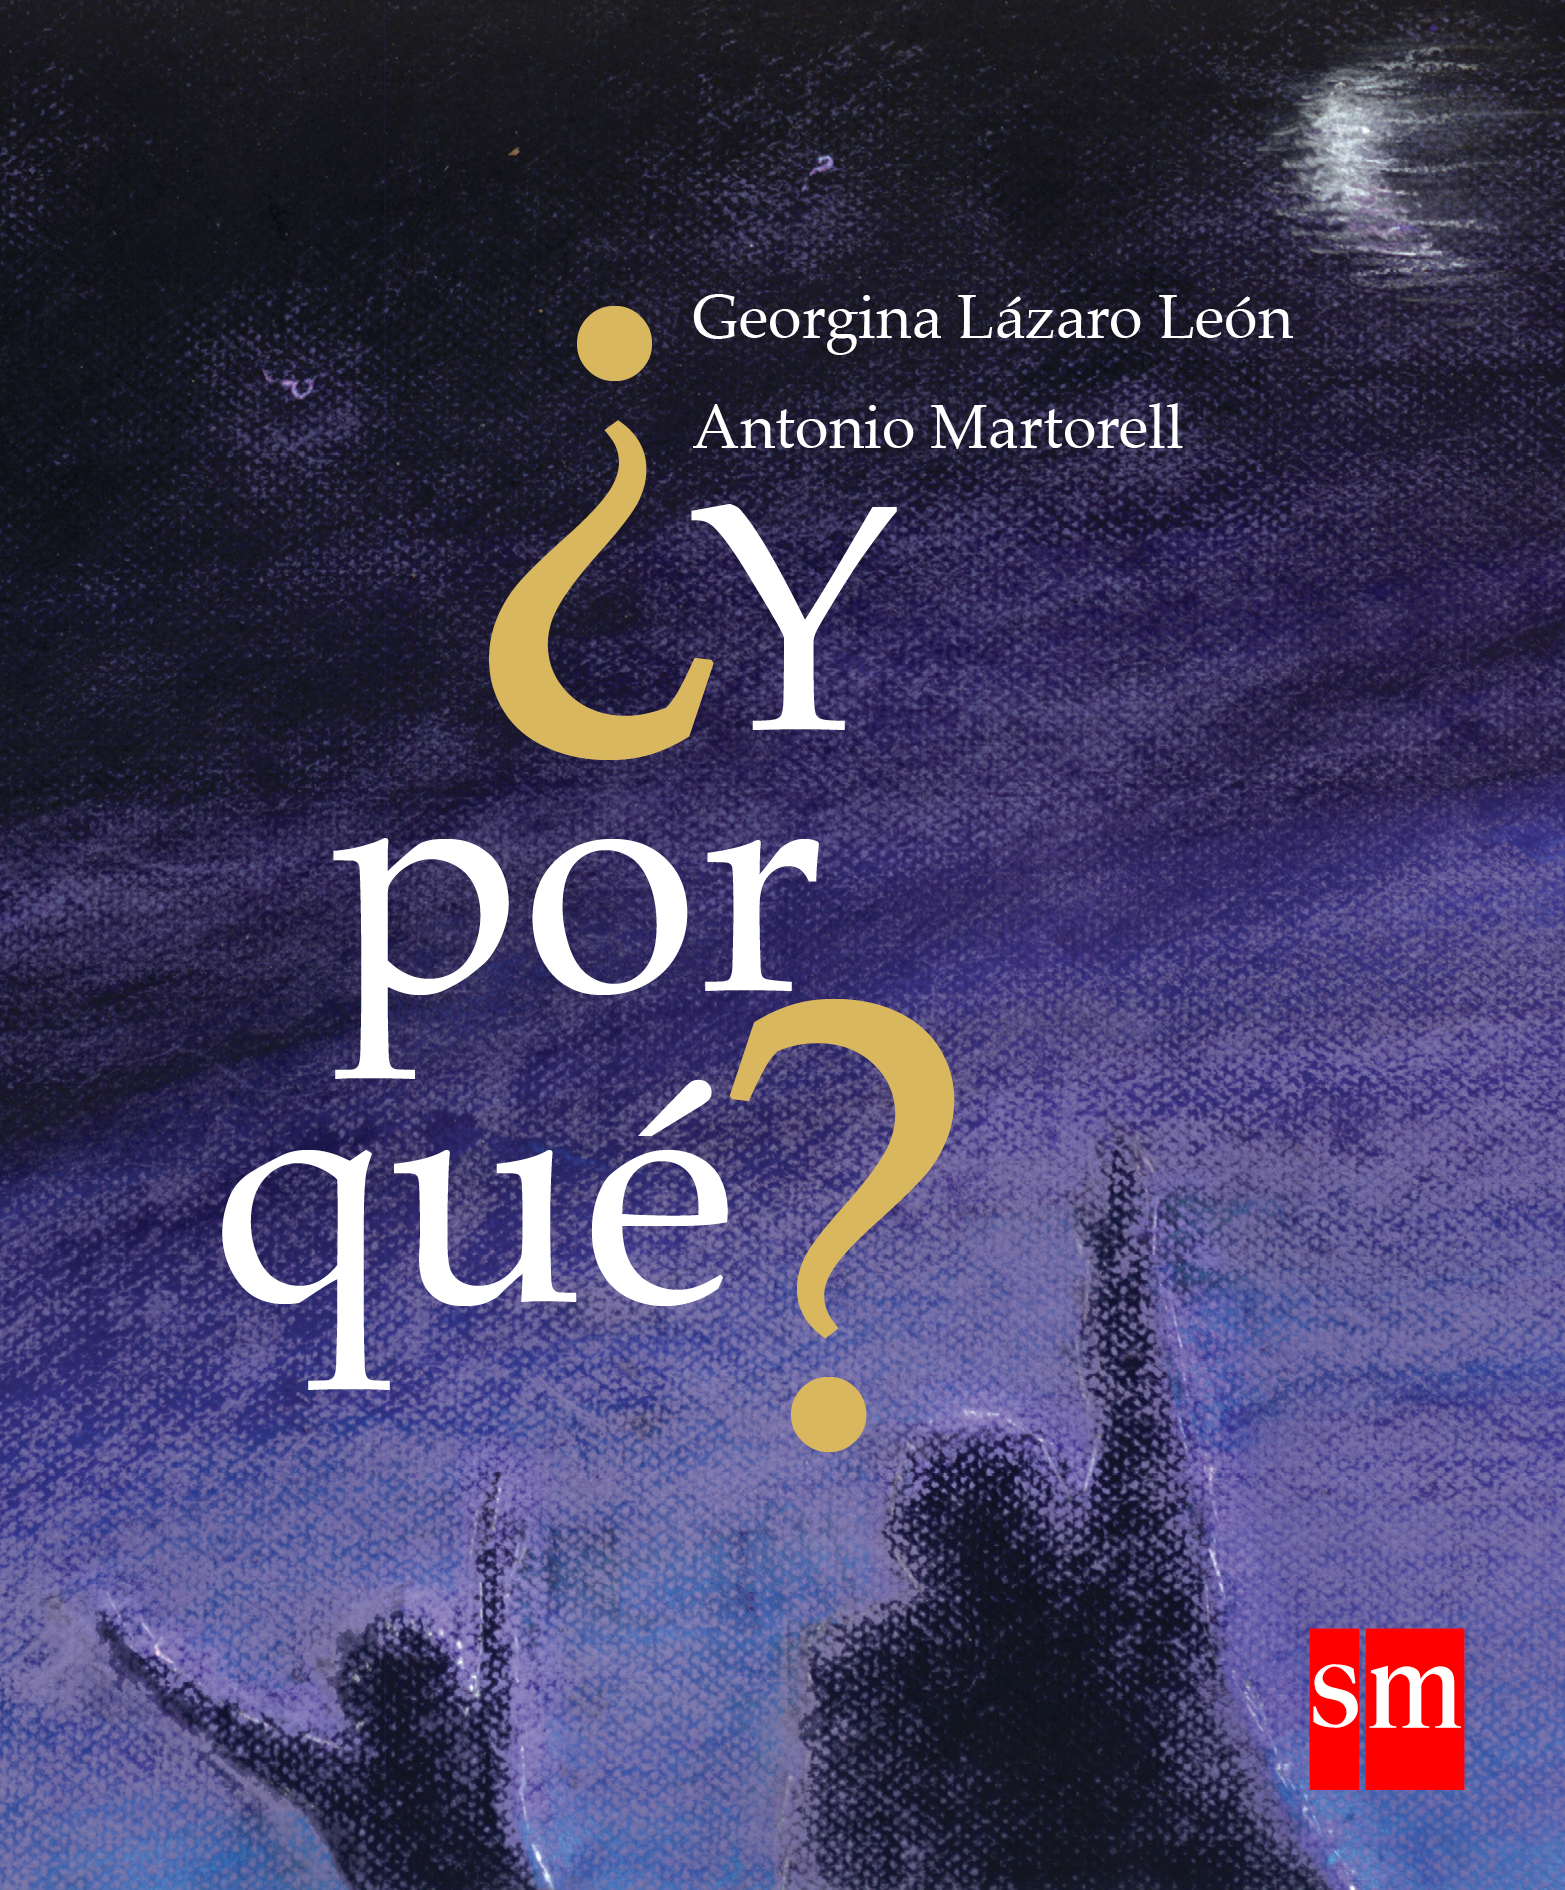 “Desde el nieto que todavía soy”: Antonio Martorell ilustra ¿Y por qué?, de Georgina Lázaro León